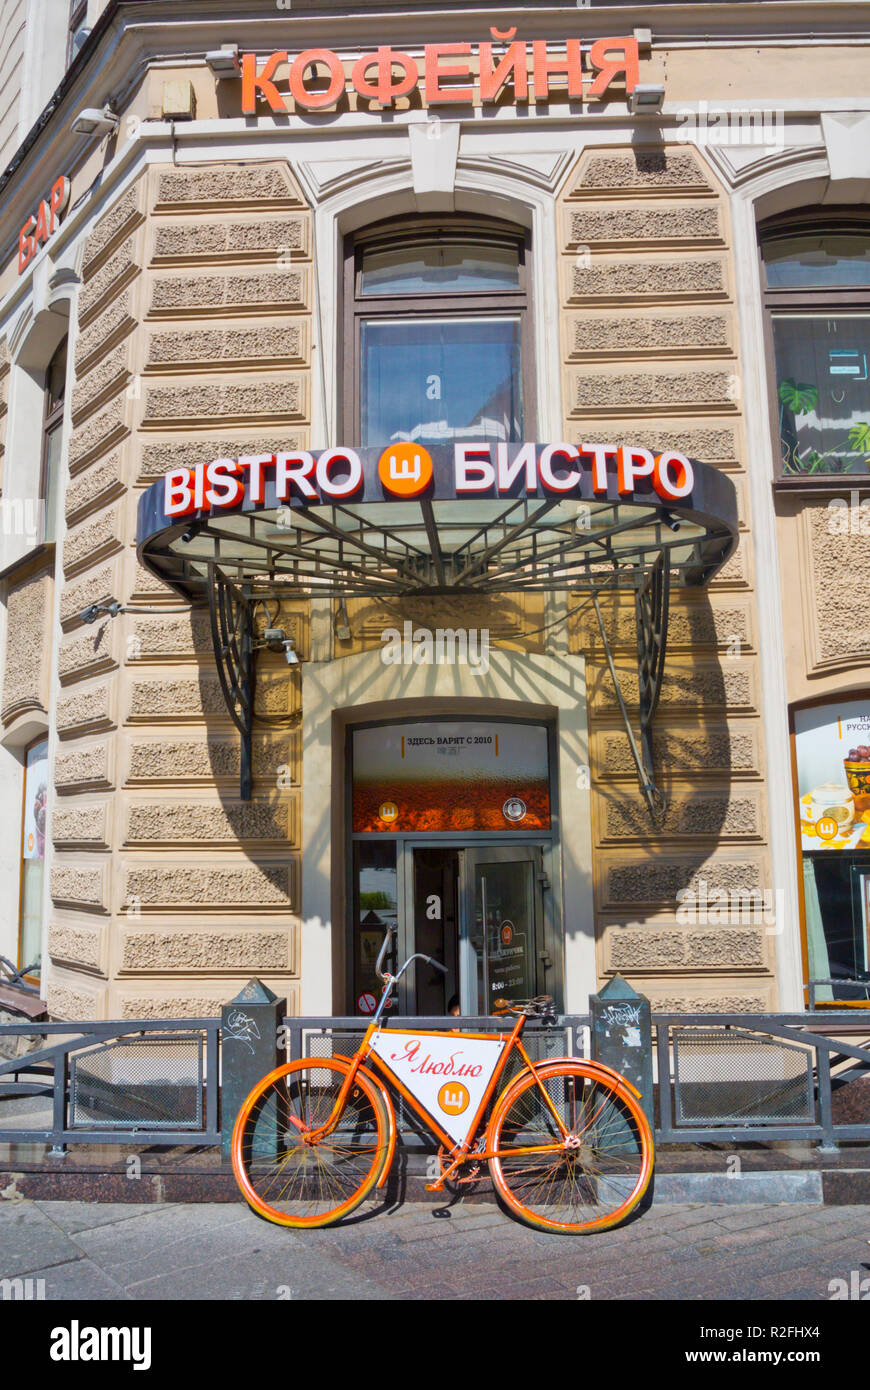 Bistro, self service restaurant, Ploschad' Vosstaniya, Saint Petersburg, Russia Stock Photo